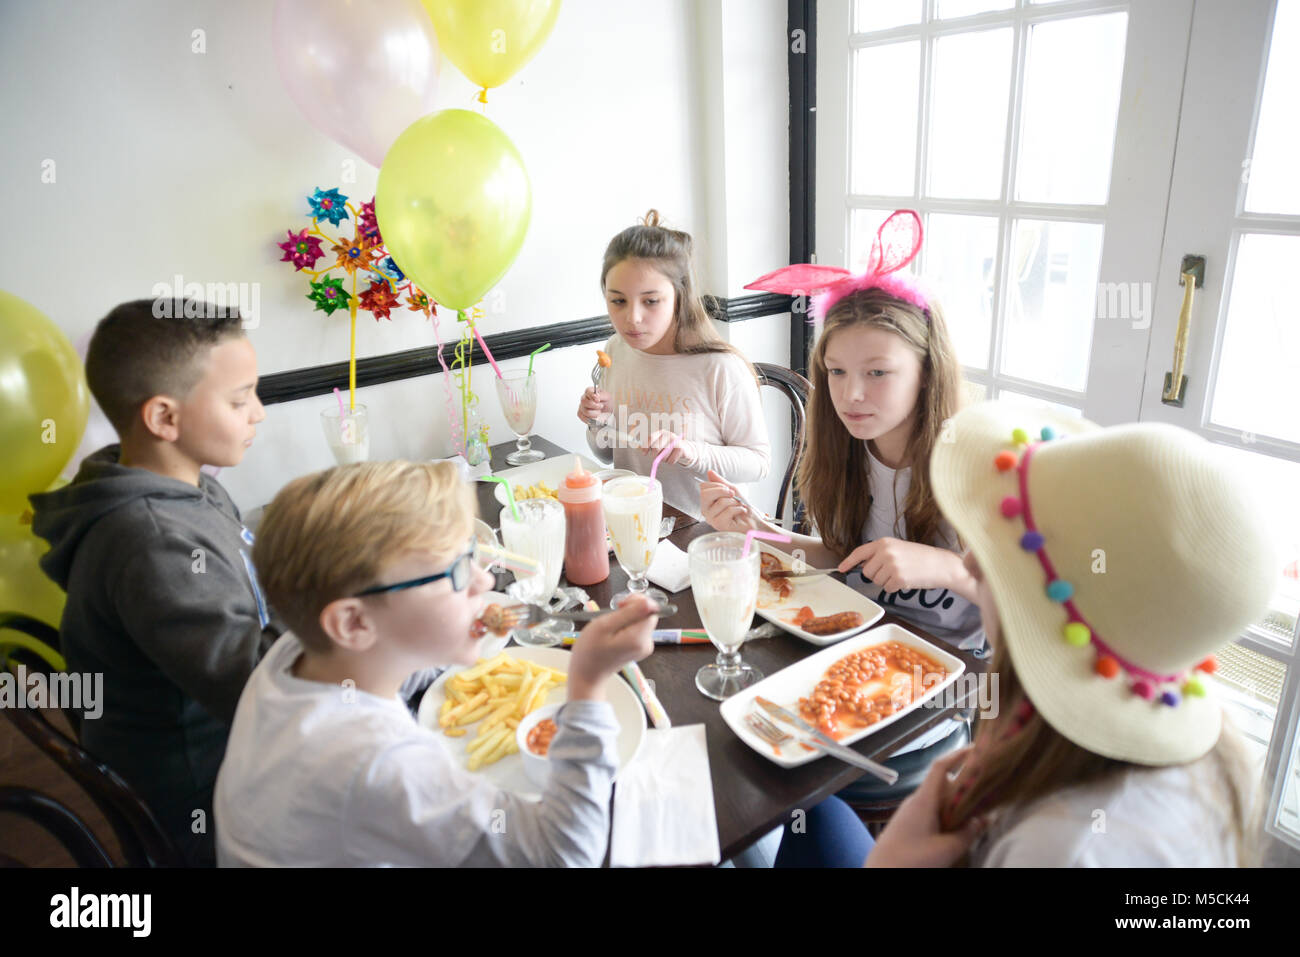 Fünf junge Kinder sitzen auf einer Party Tisch essen gebratene Nahrung und trinken Milchshakes - es gibt Ballons und Party Dekorationen Stockfoto